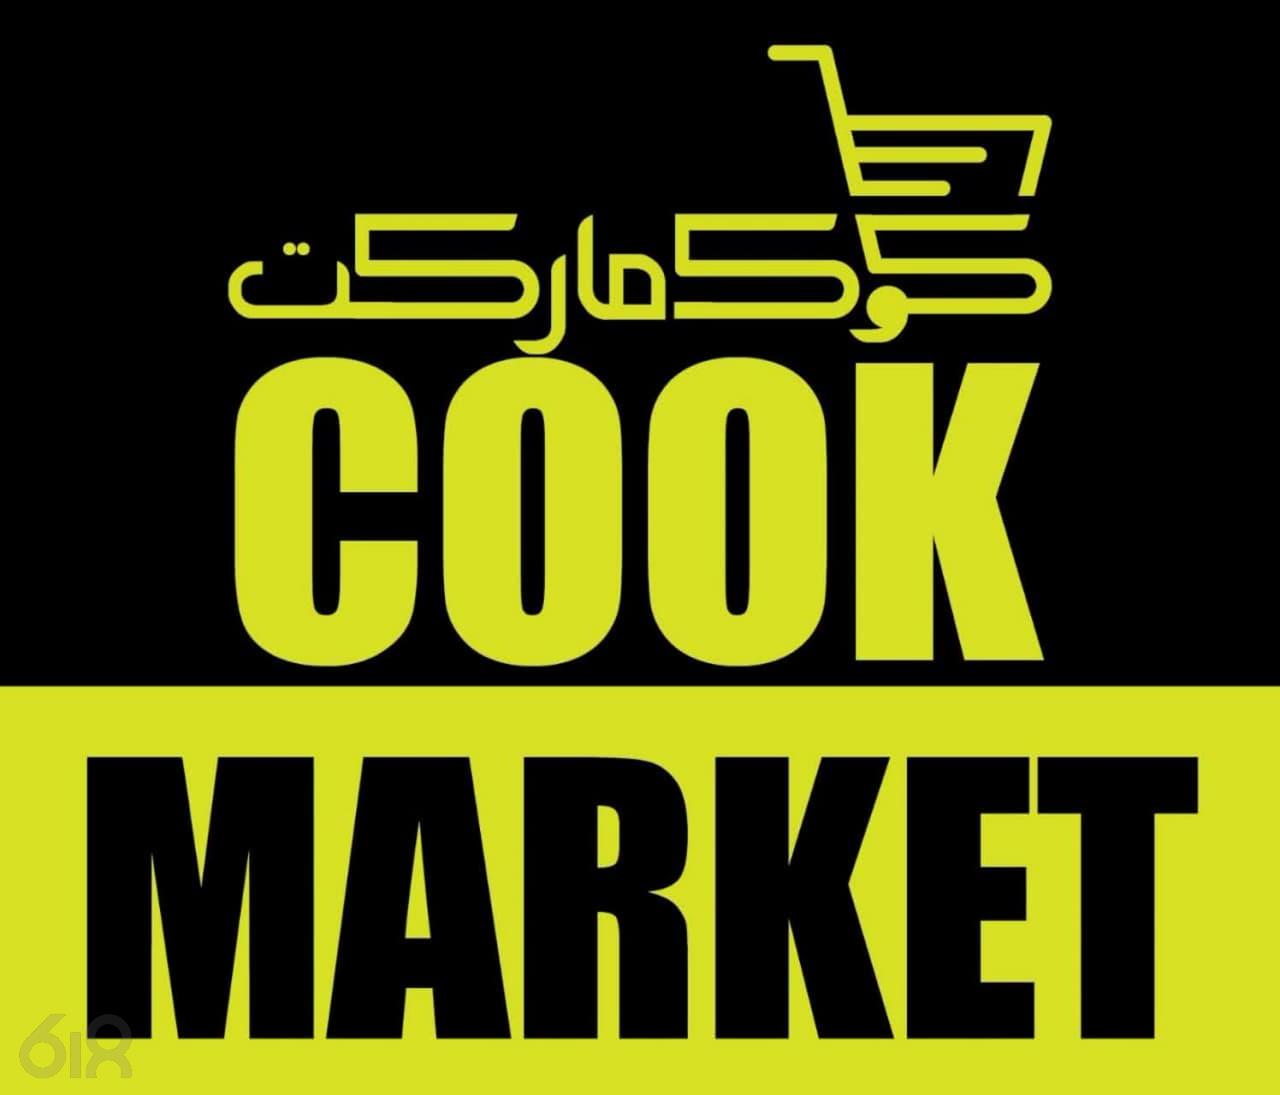 فروشگاه آنلاین کوک مارکت در مشهد، تولید و فروش ادویه و طعم دهنده در مشهد، فروش مواد اولیه صنایع غذایی و کیک و شیرینی در مشهد، سوسیس و کالباس خانگی در مشهد